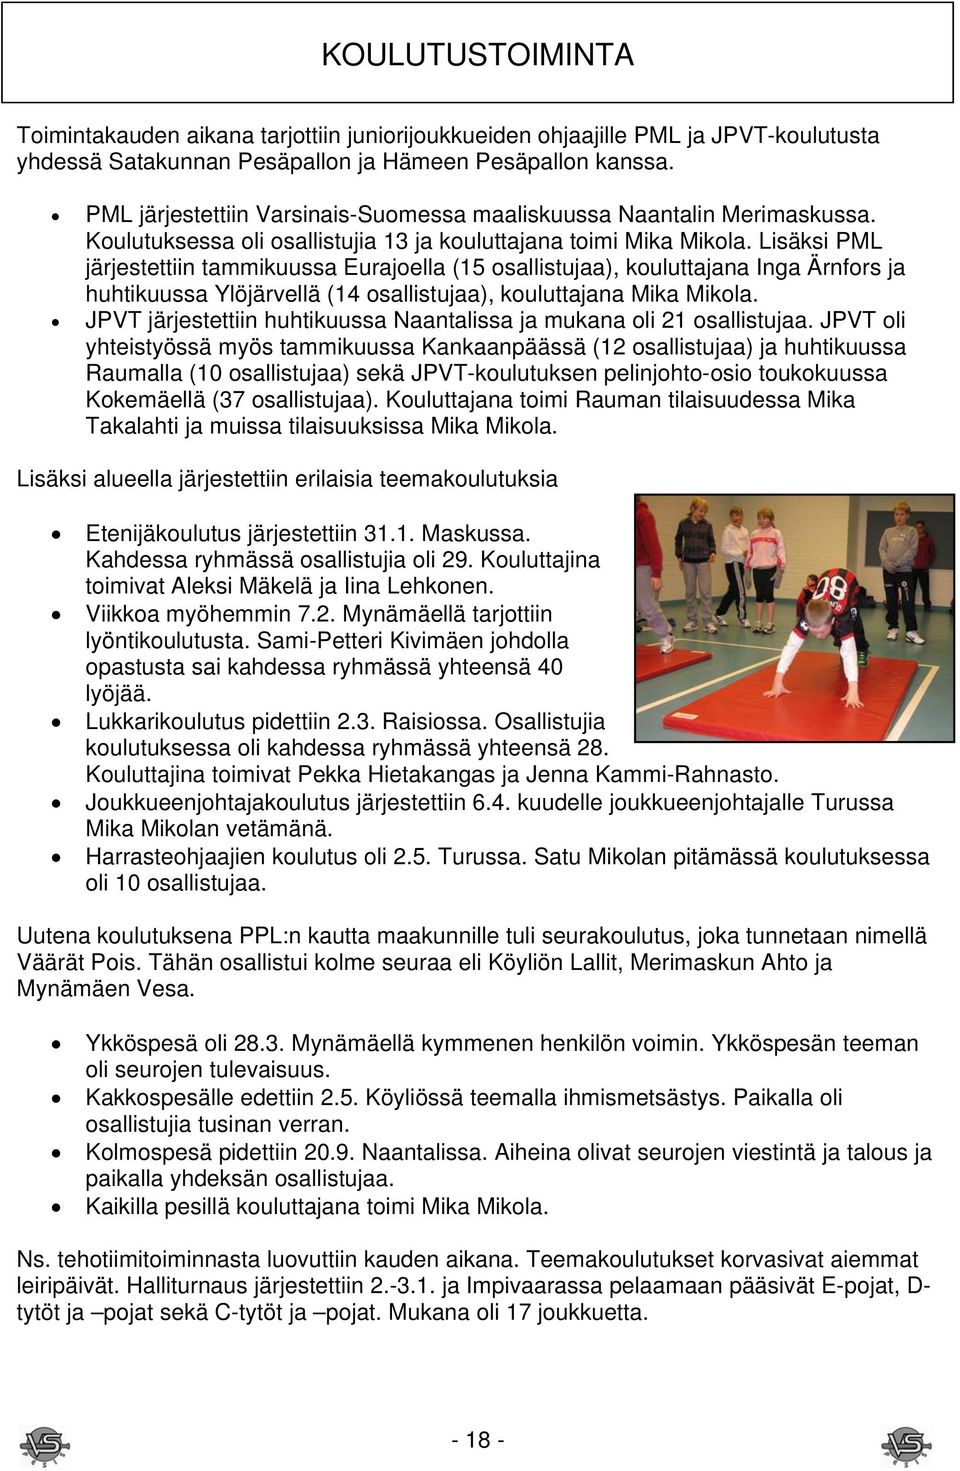 Lisäksi PML järjestettiin tammikuussa Eurajoella (15 osallistujaa), kouluttajana Inga Ärnfors ja huhtikuussa Ylöjärvellä (14 osallistujaa), kouluttajana Mika Mikola.